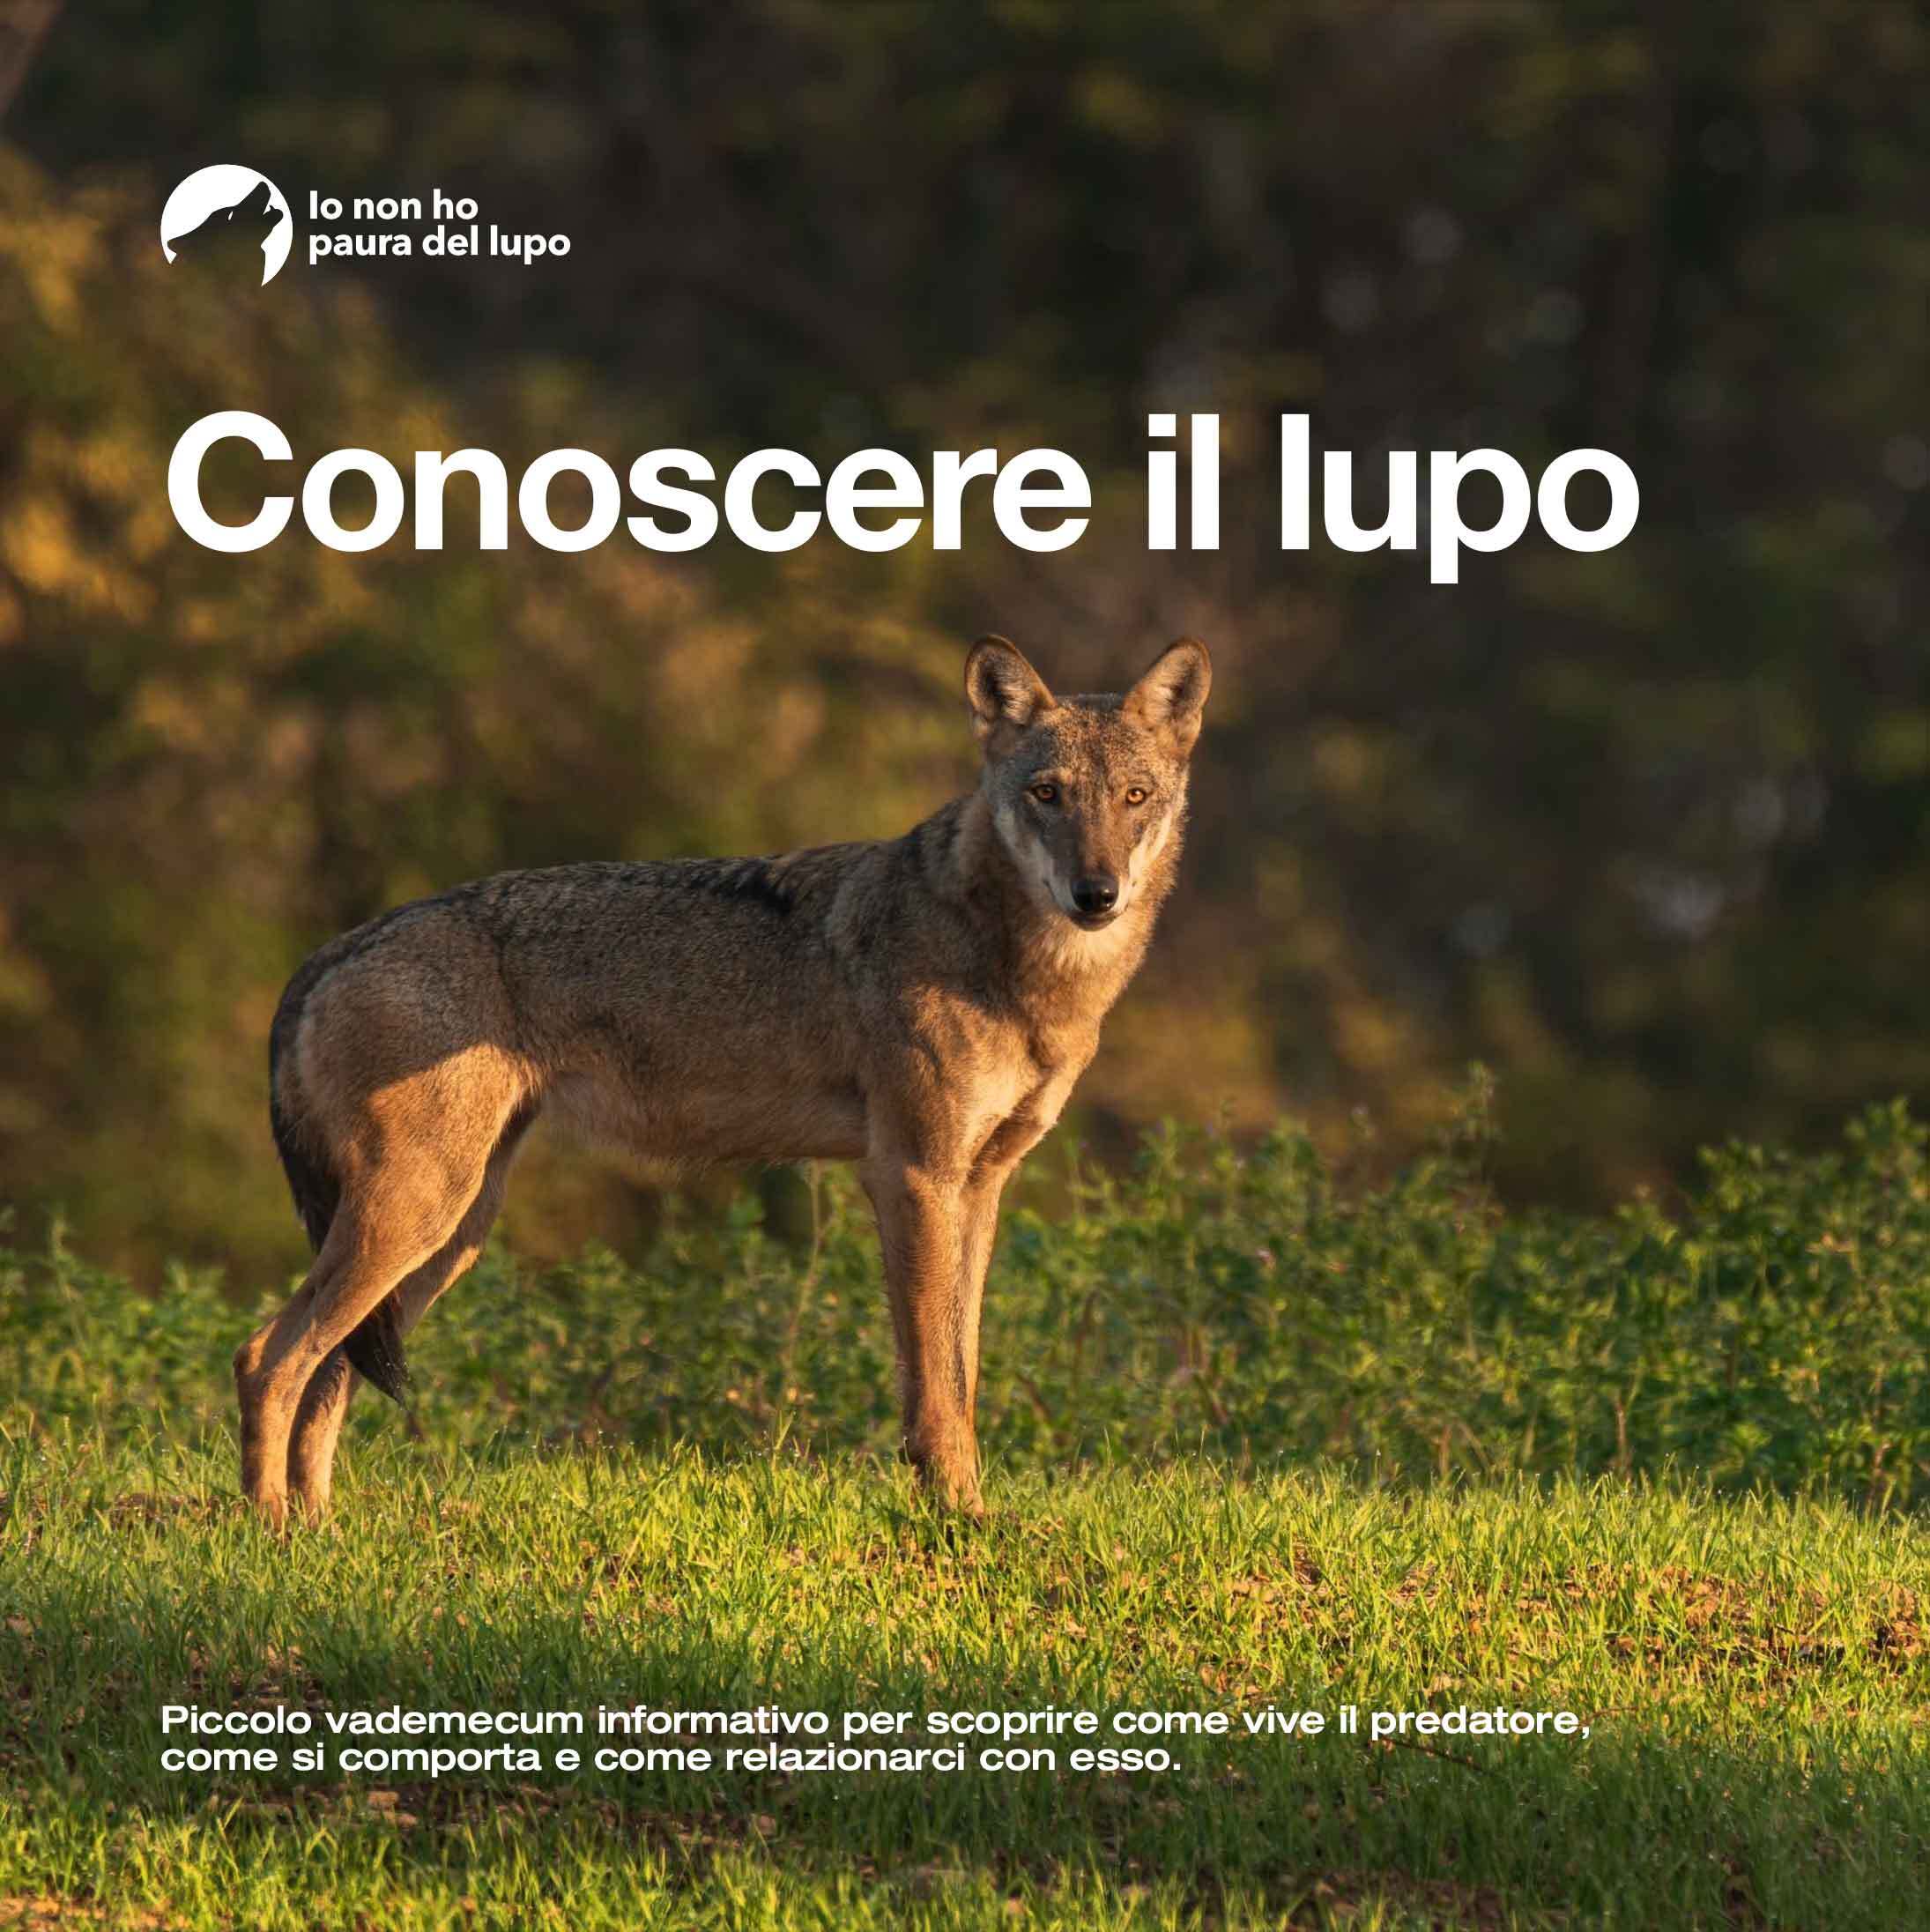 «Conoscere il lupo» piccolo vademecum informativo per scoprire come vive il predatore, come si comporta e come relazionarci con esso